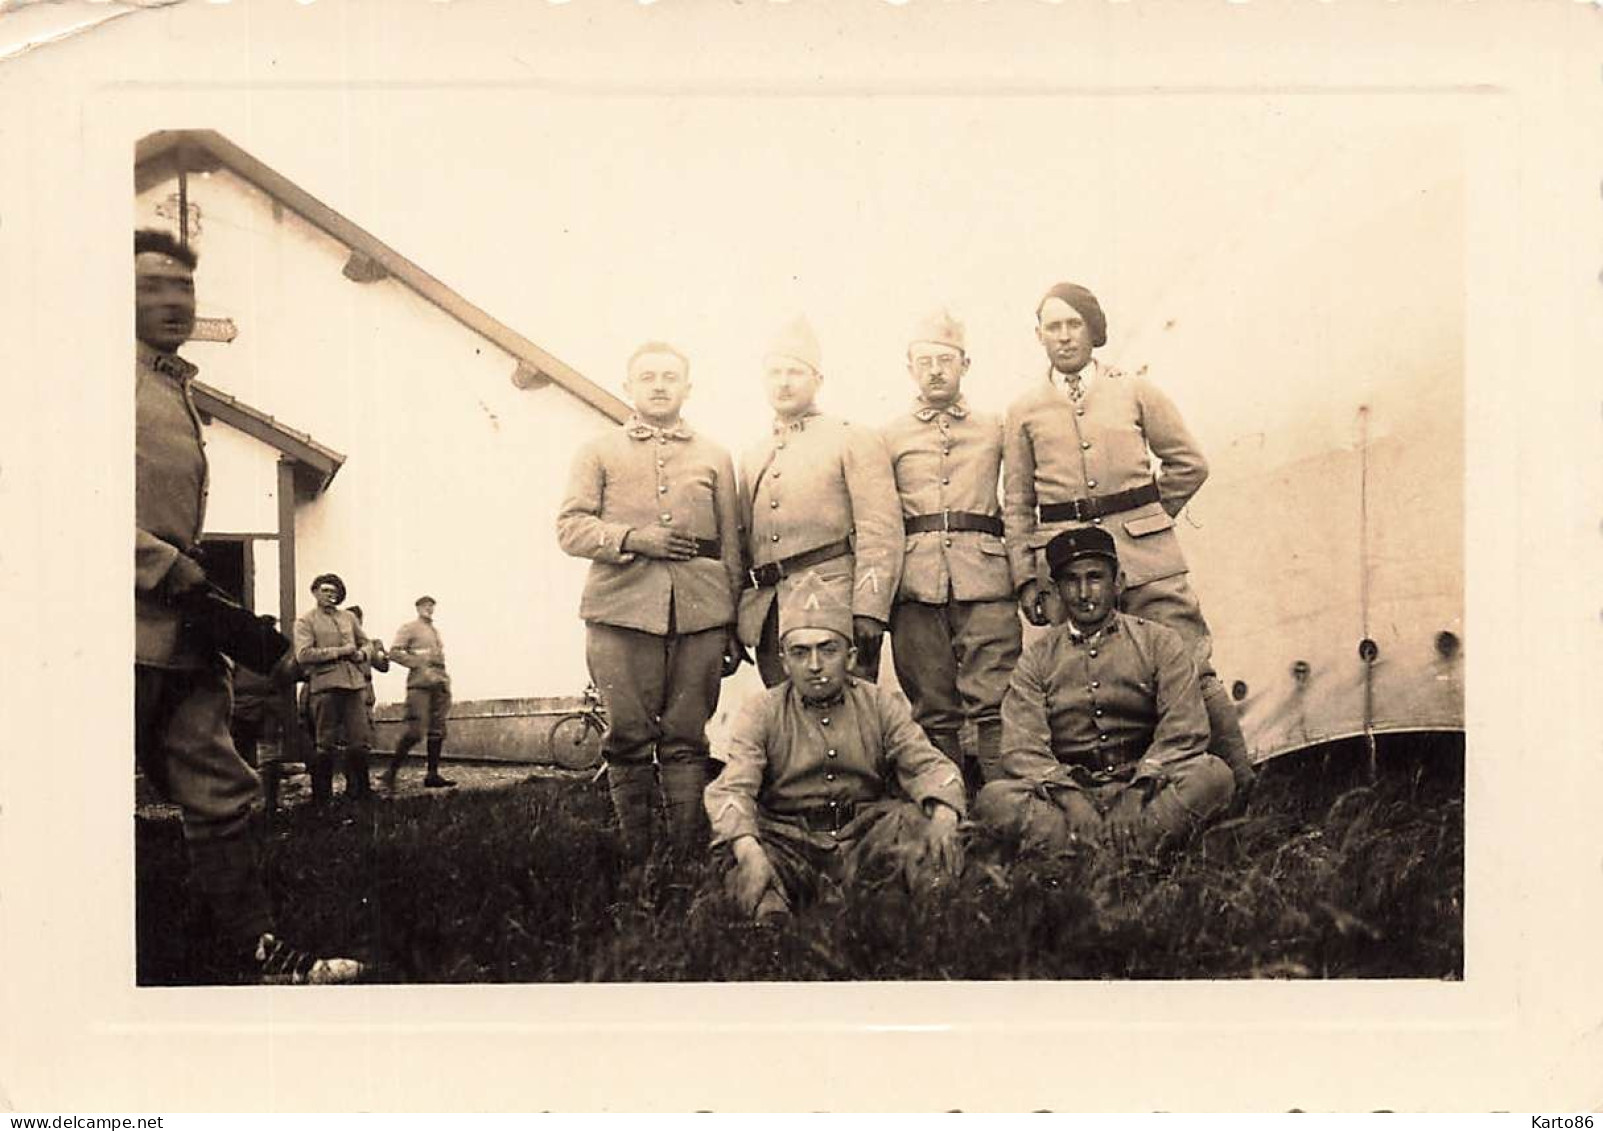 camp du larzac , la cavalerie * 8 photos anciennes 1937 * militaria régiment militaire soldats * 10.4x7.2cm